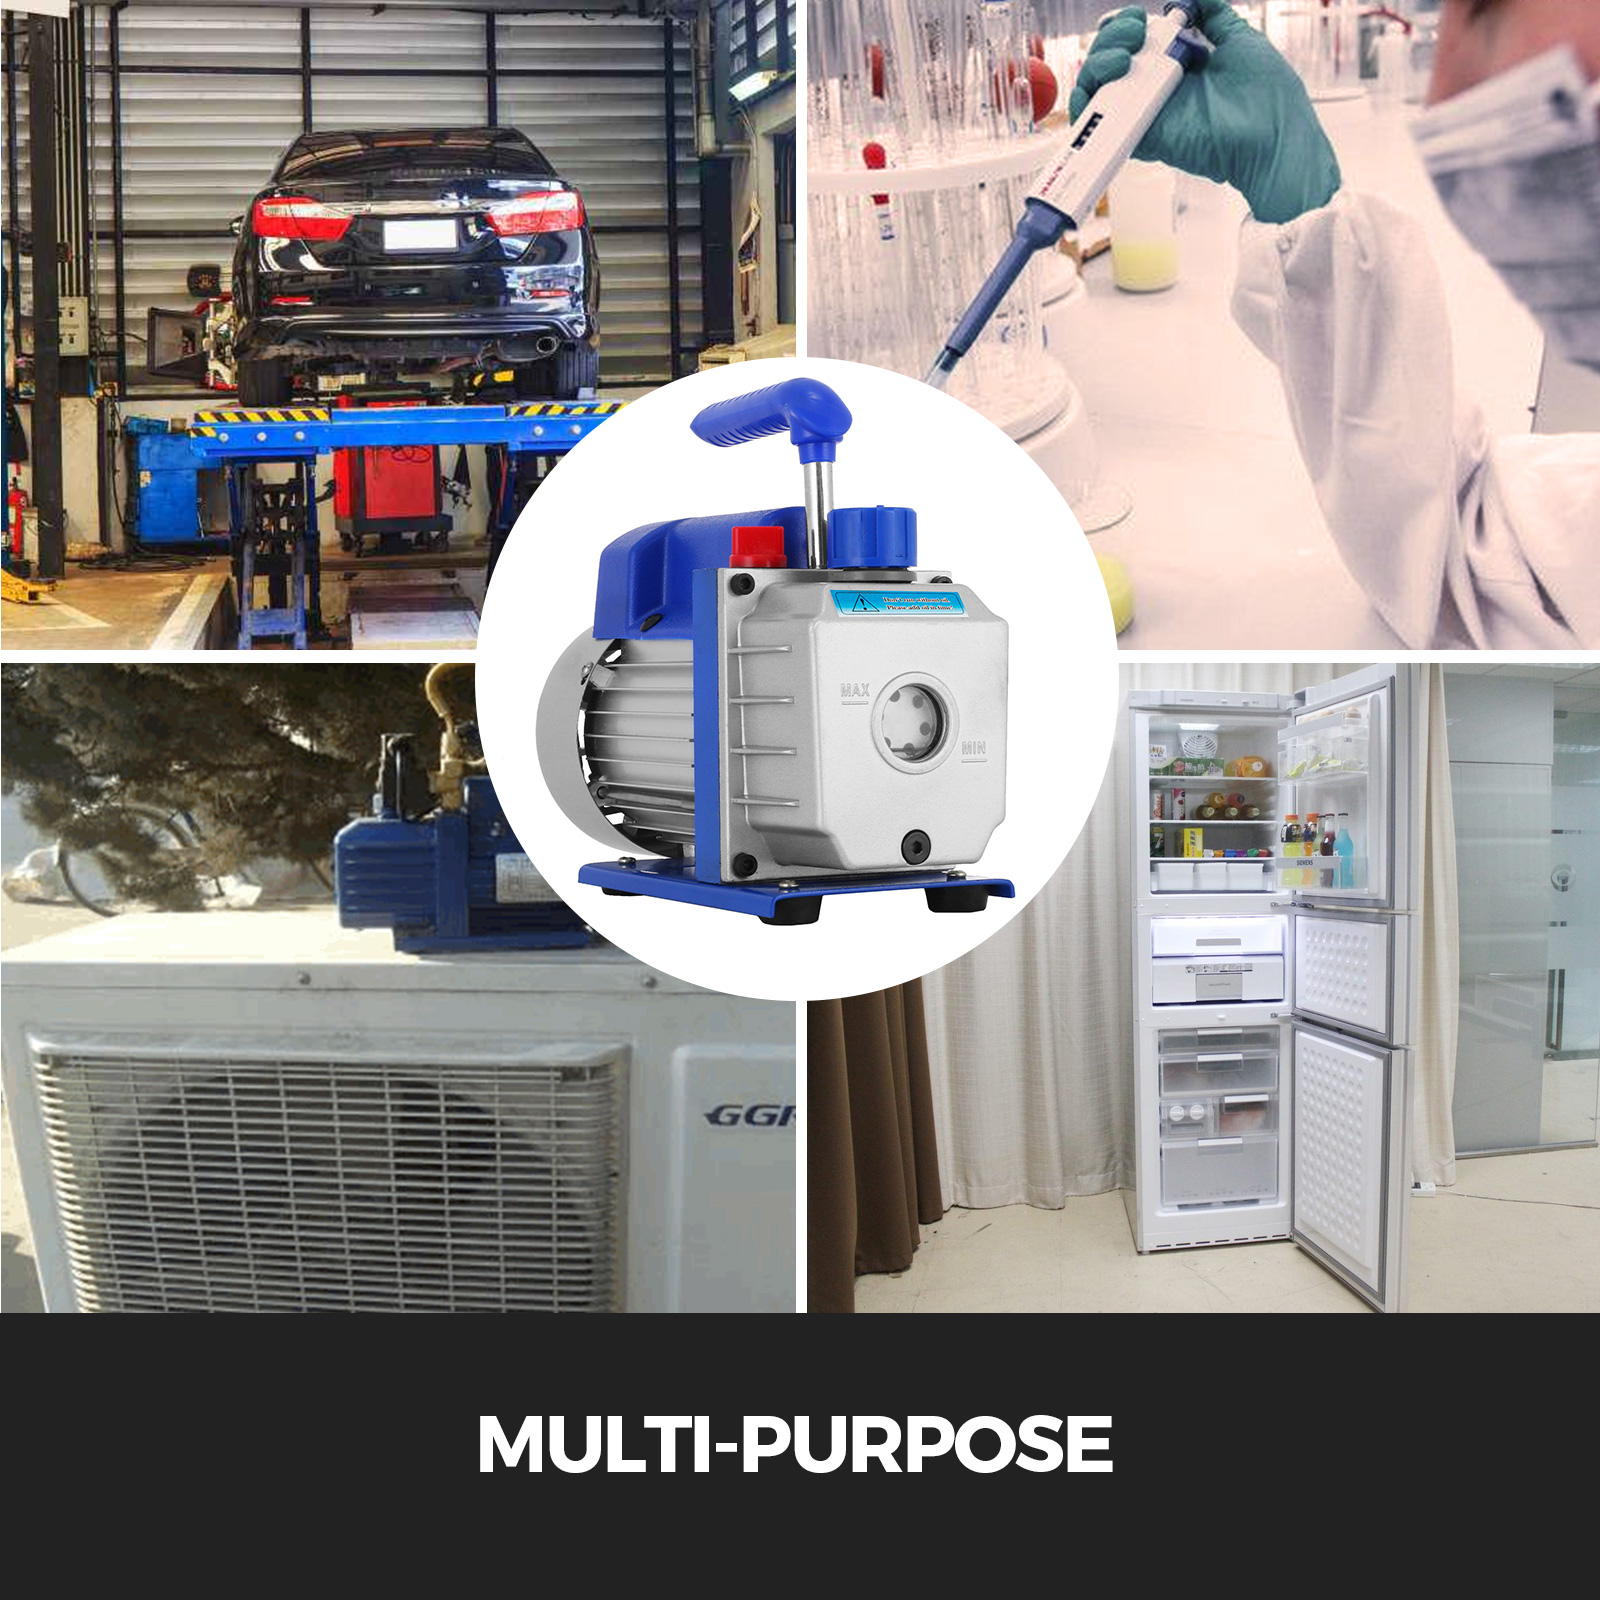 7CFM 5PA Kältemittel-Vakuumpumpe 1/4 Luftansaugung Kühlung 1/2 HP für Auto  Haushalt Klimaanlagen Für